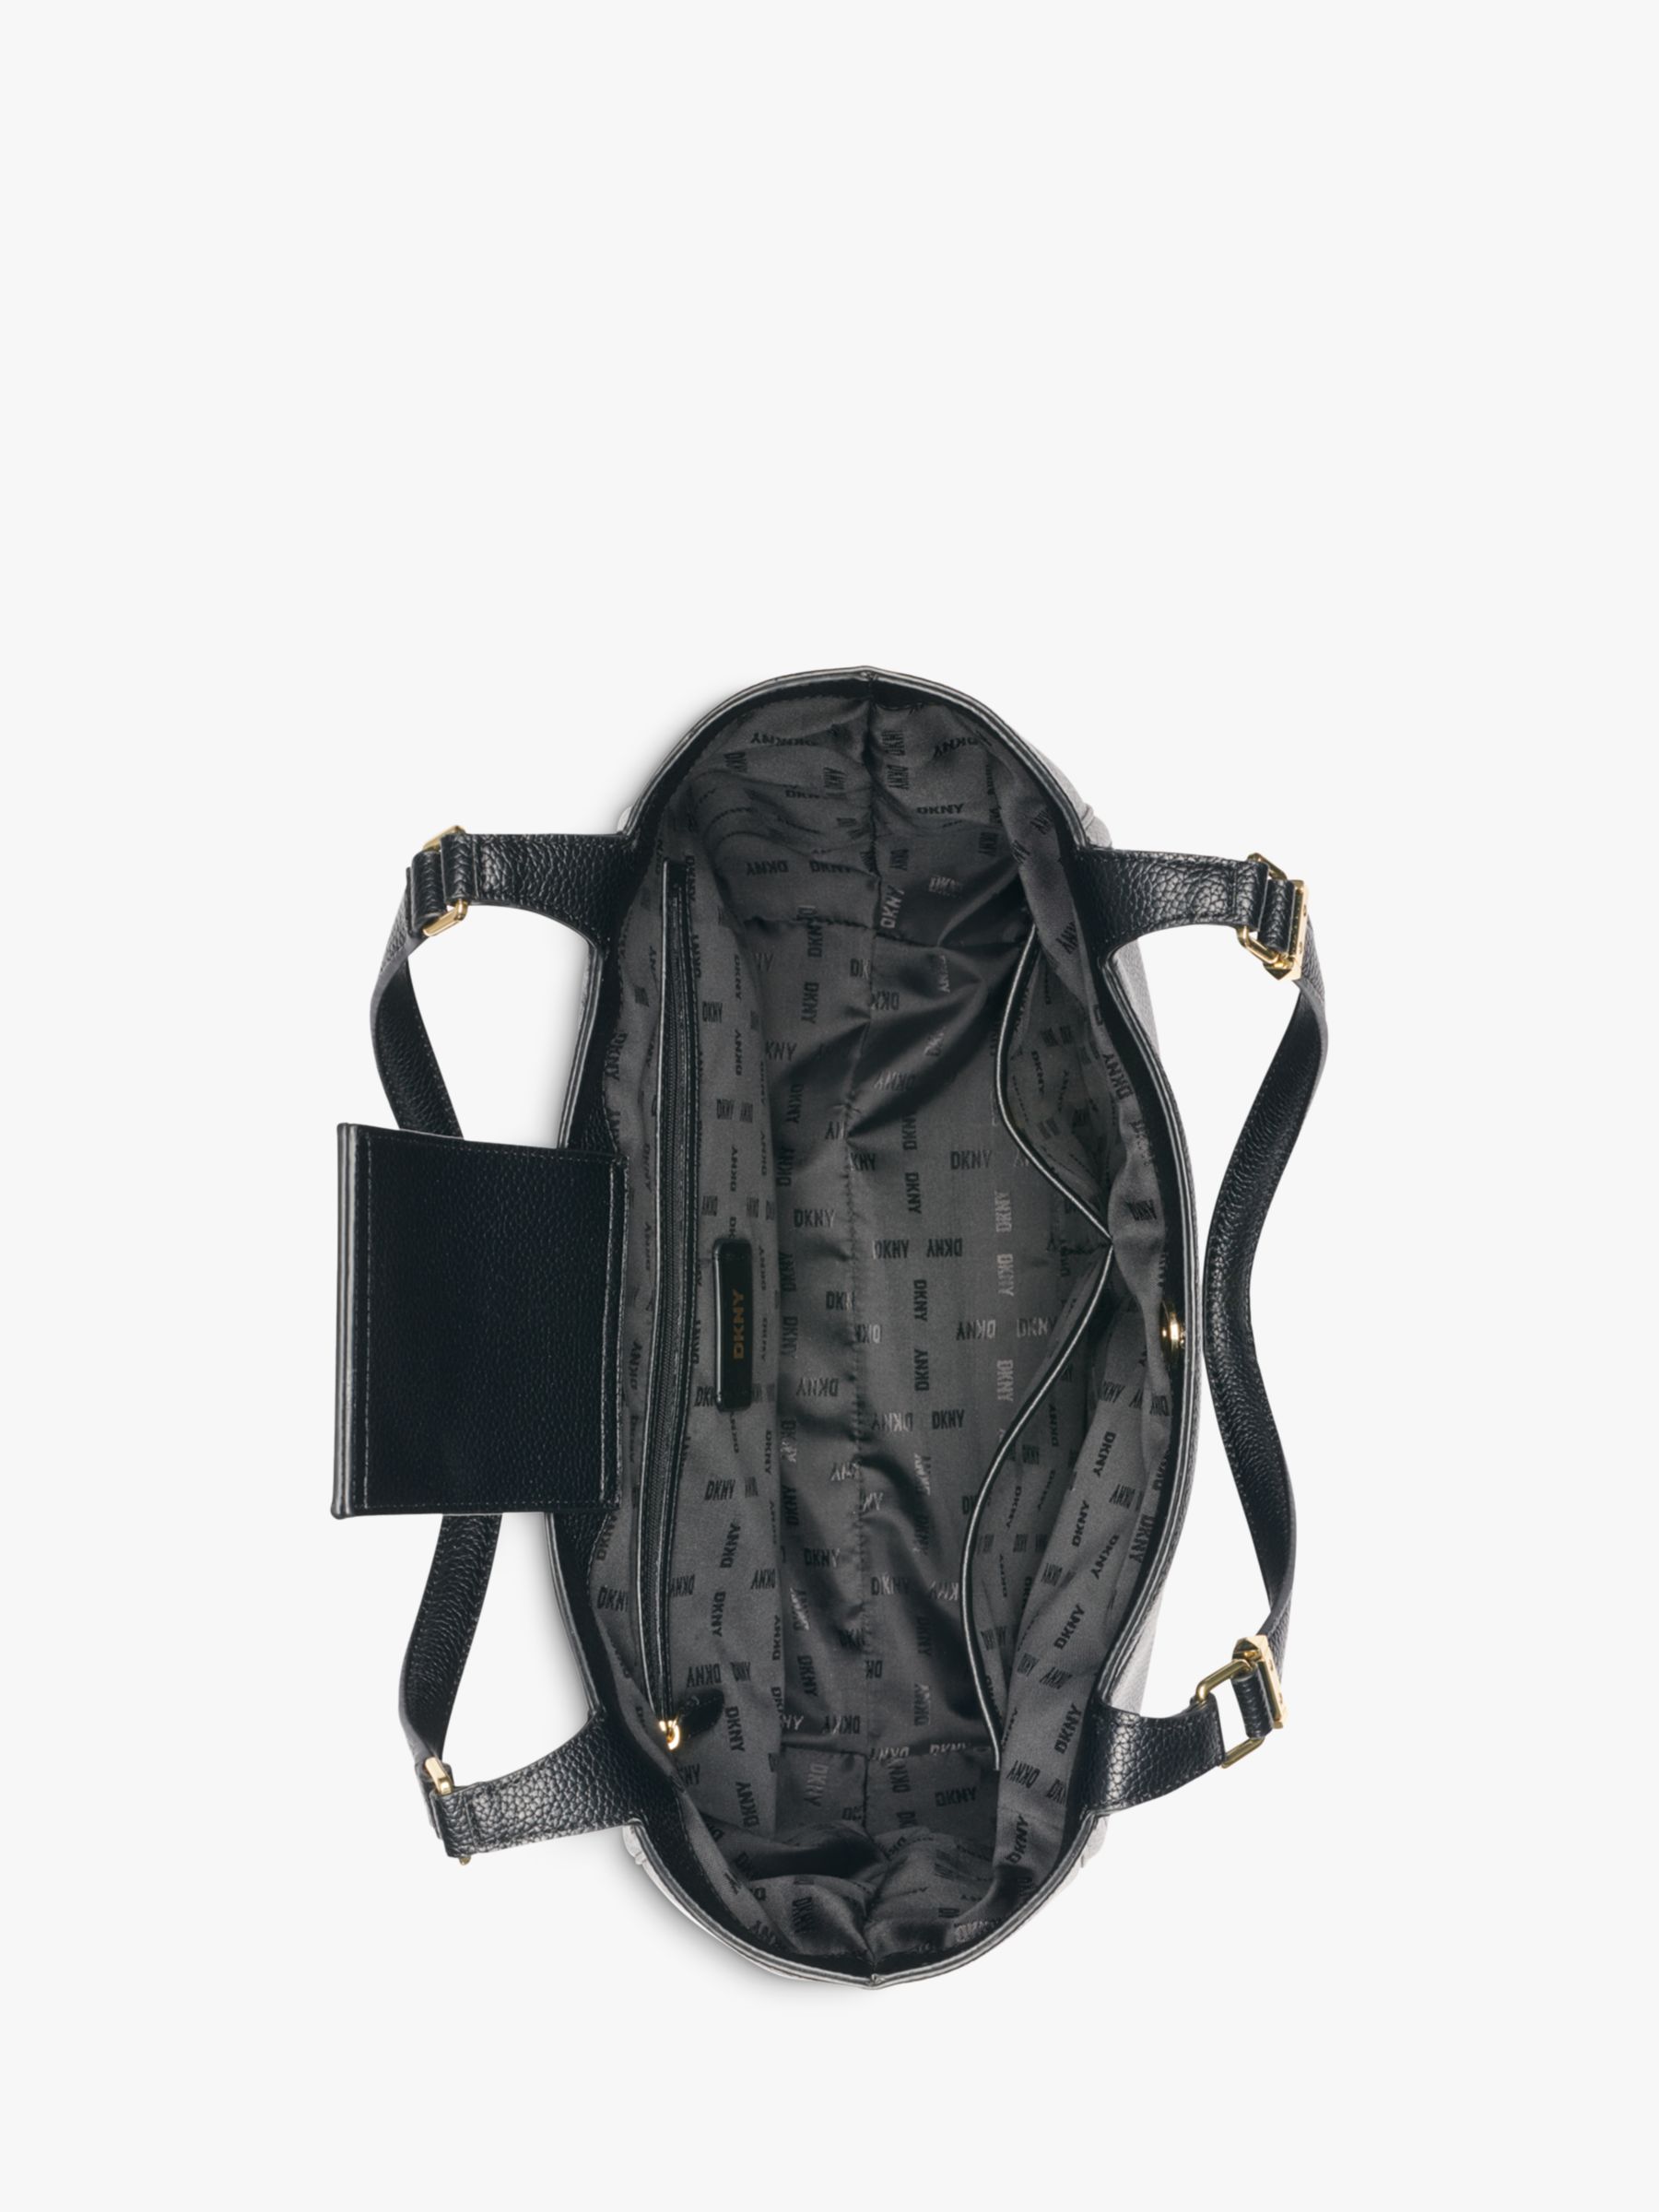 Buy DKNY Barbara Shopper Bag, Black/Gold Online at johnlewis.com